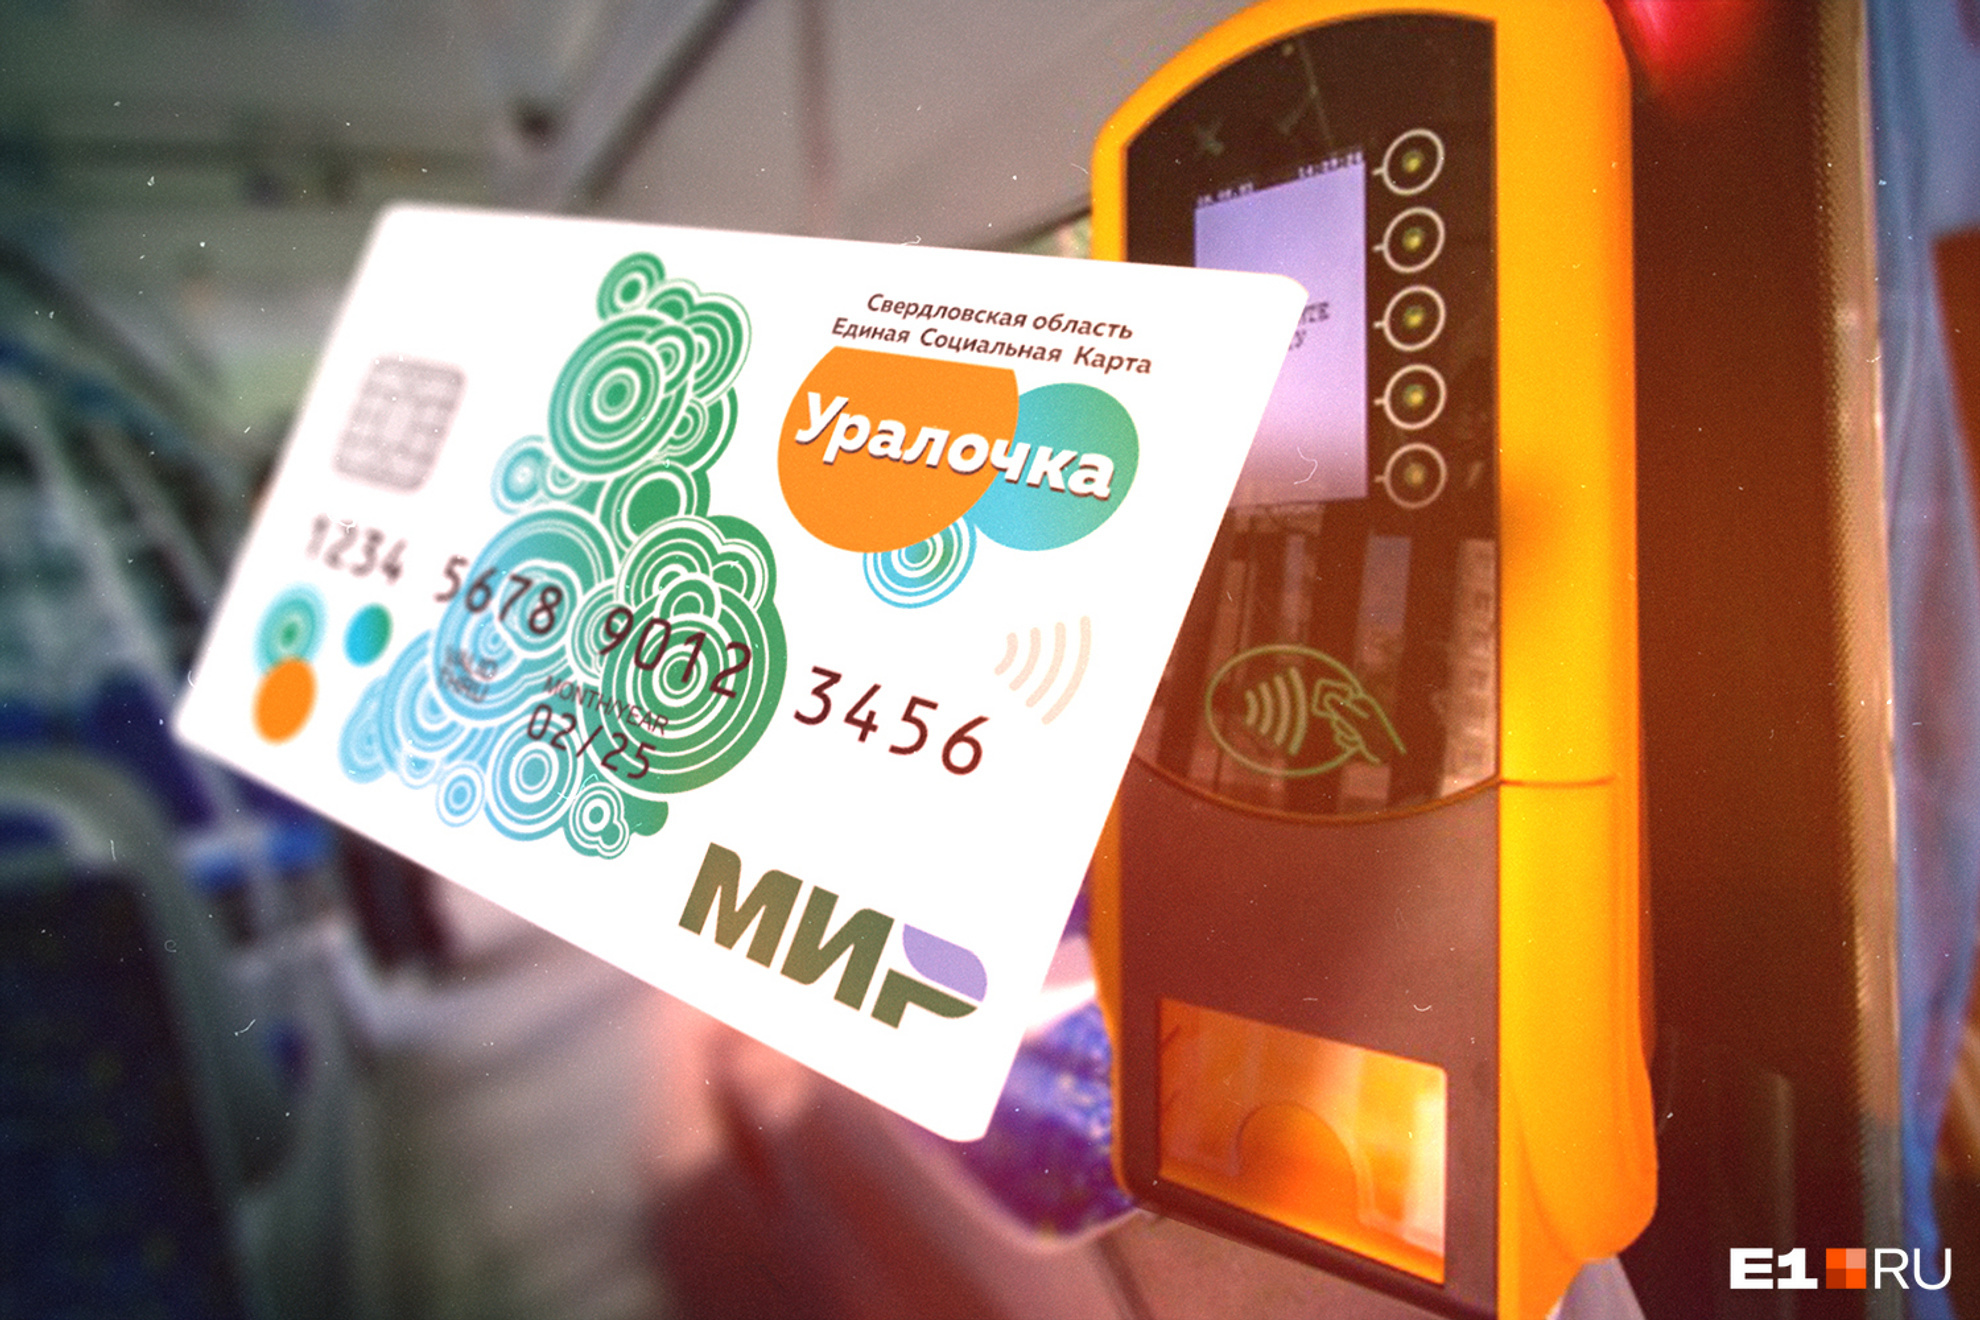 В Екатеринбурге проезд подешевеет до 25 рублей. Но не для всех